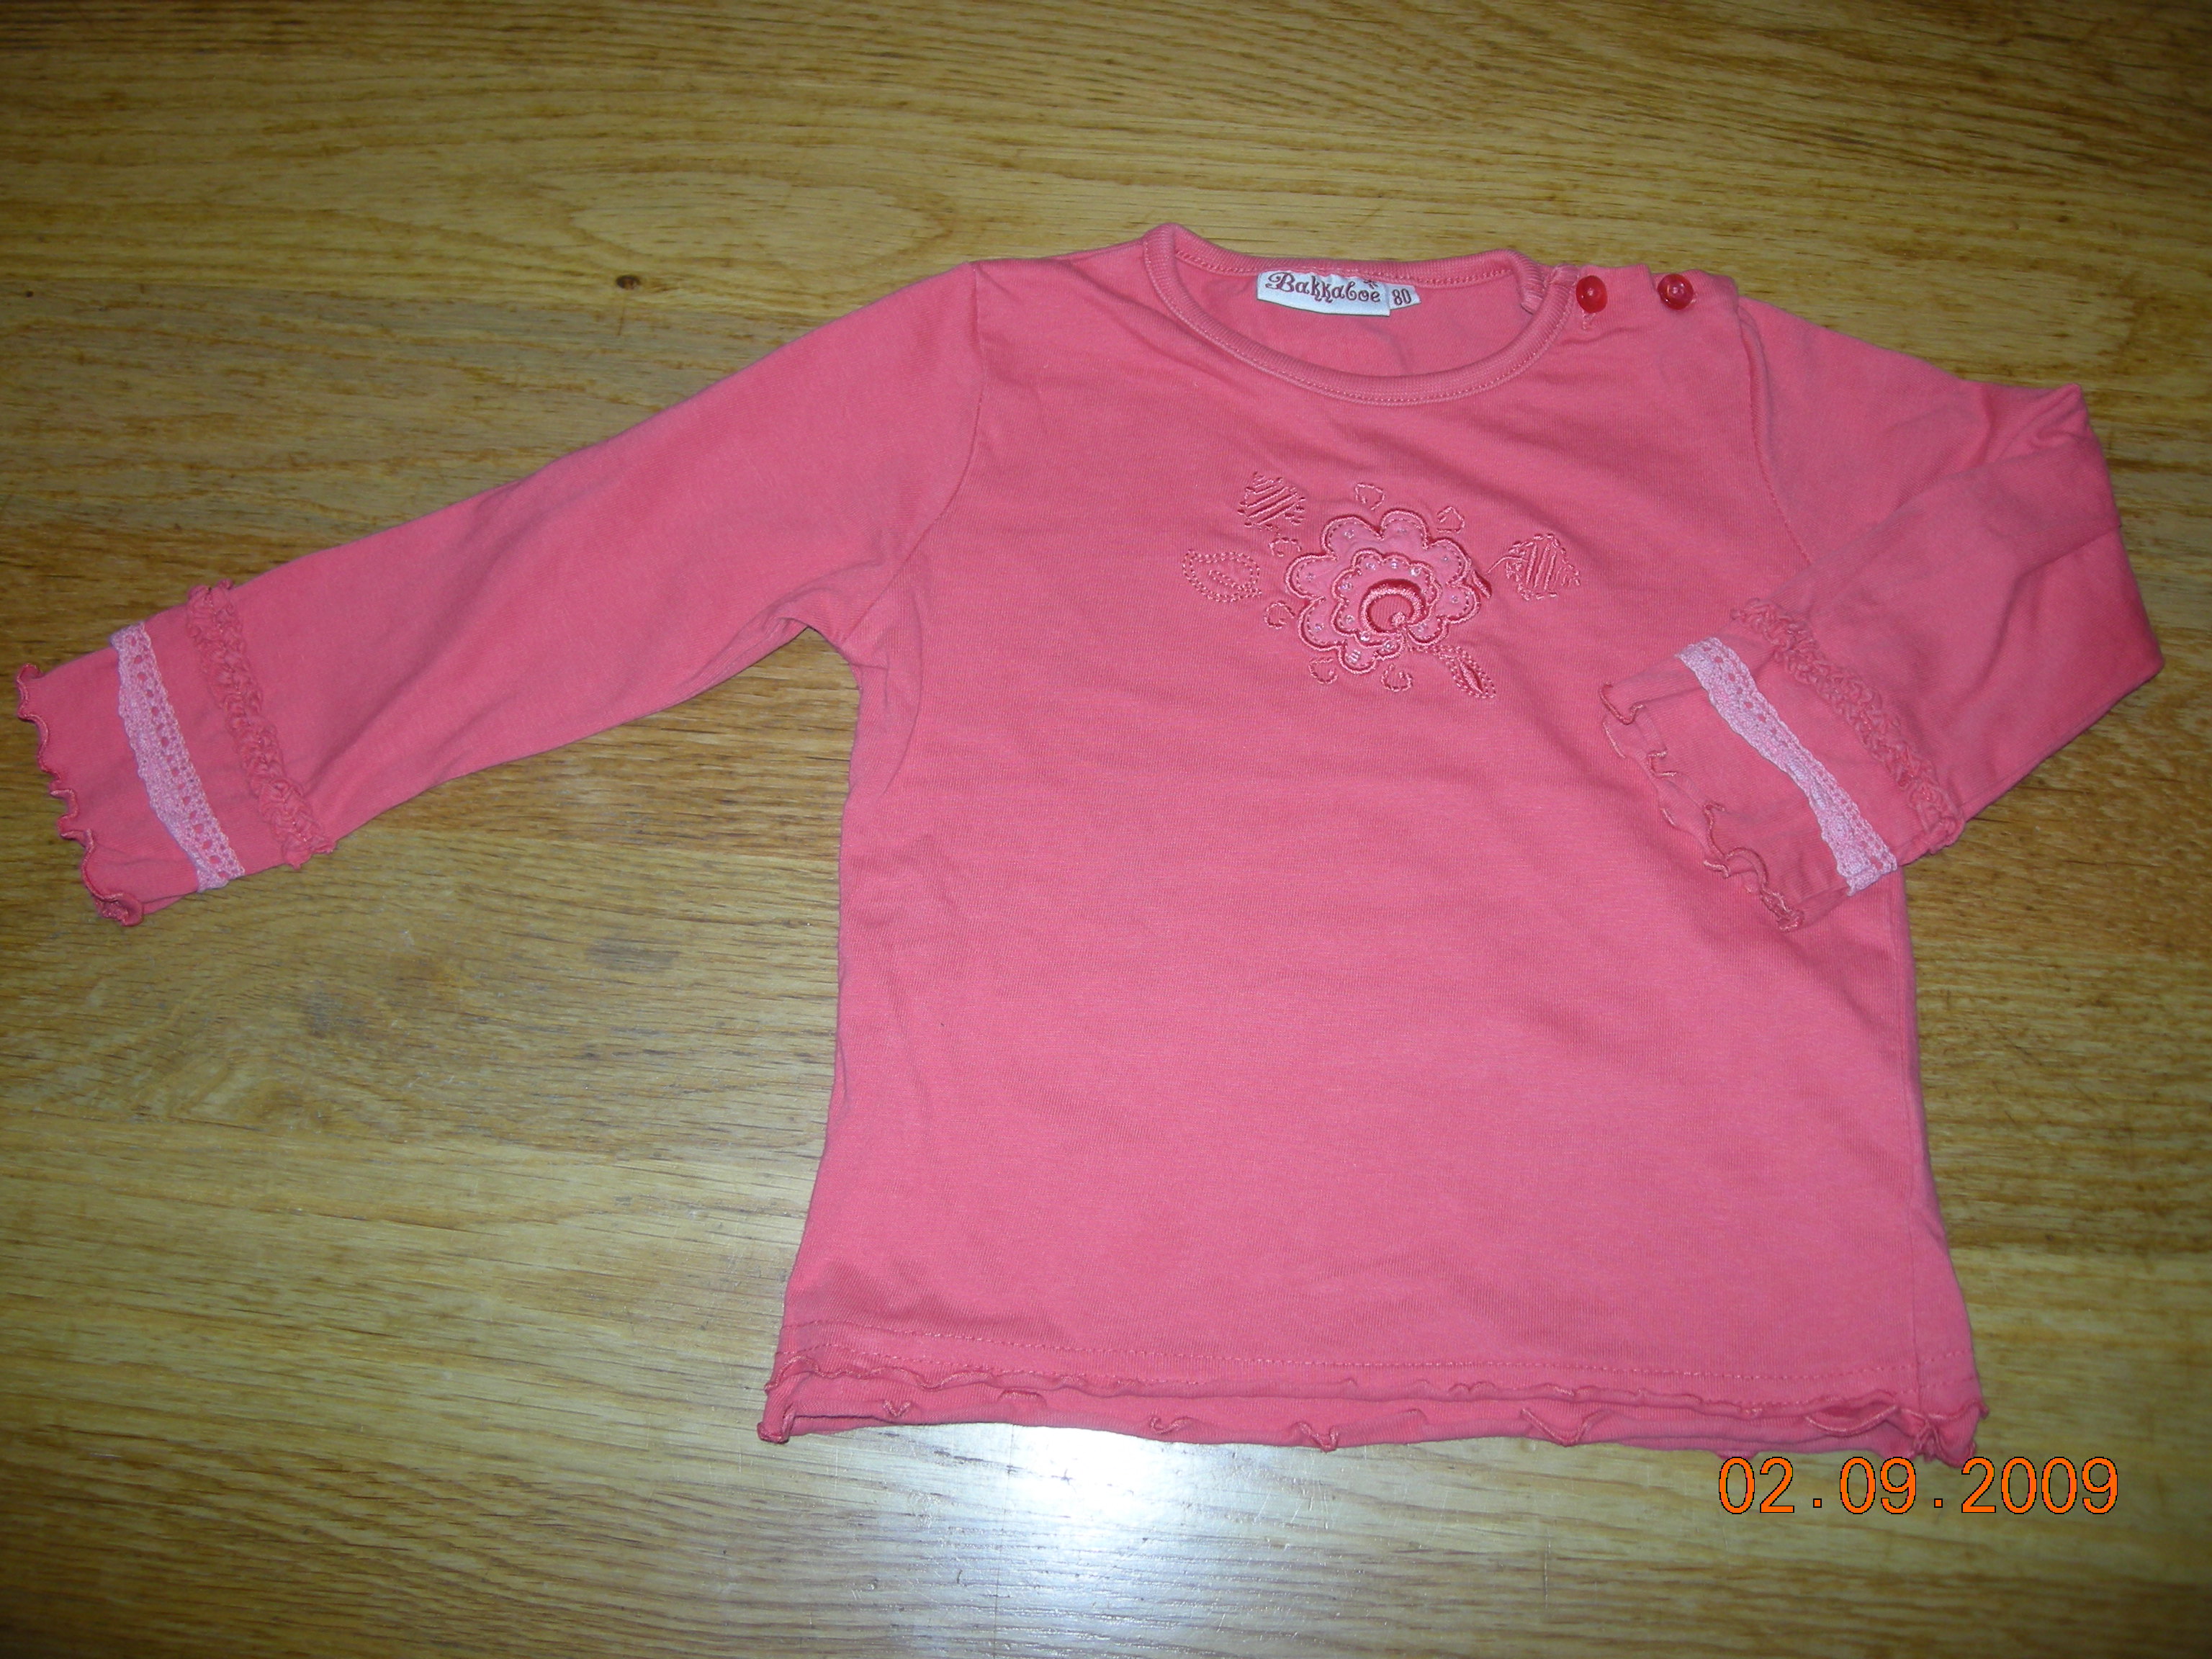 Klik hier om een vergroting van deze - Oranje-rood shirt maat 80 Bakkaboe - te bekijken!